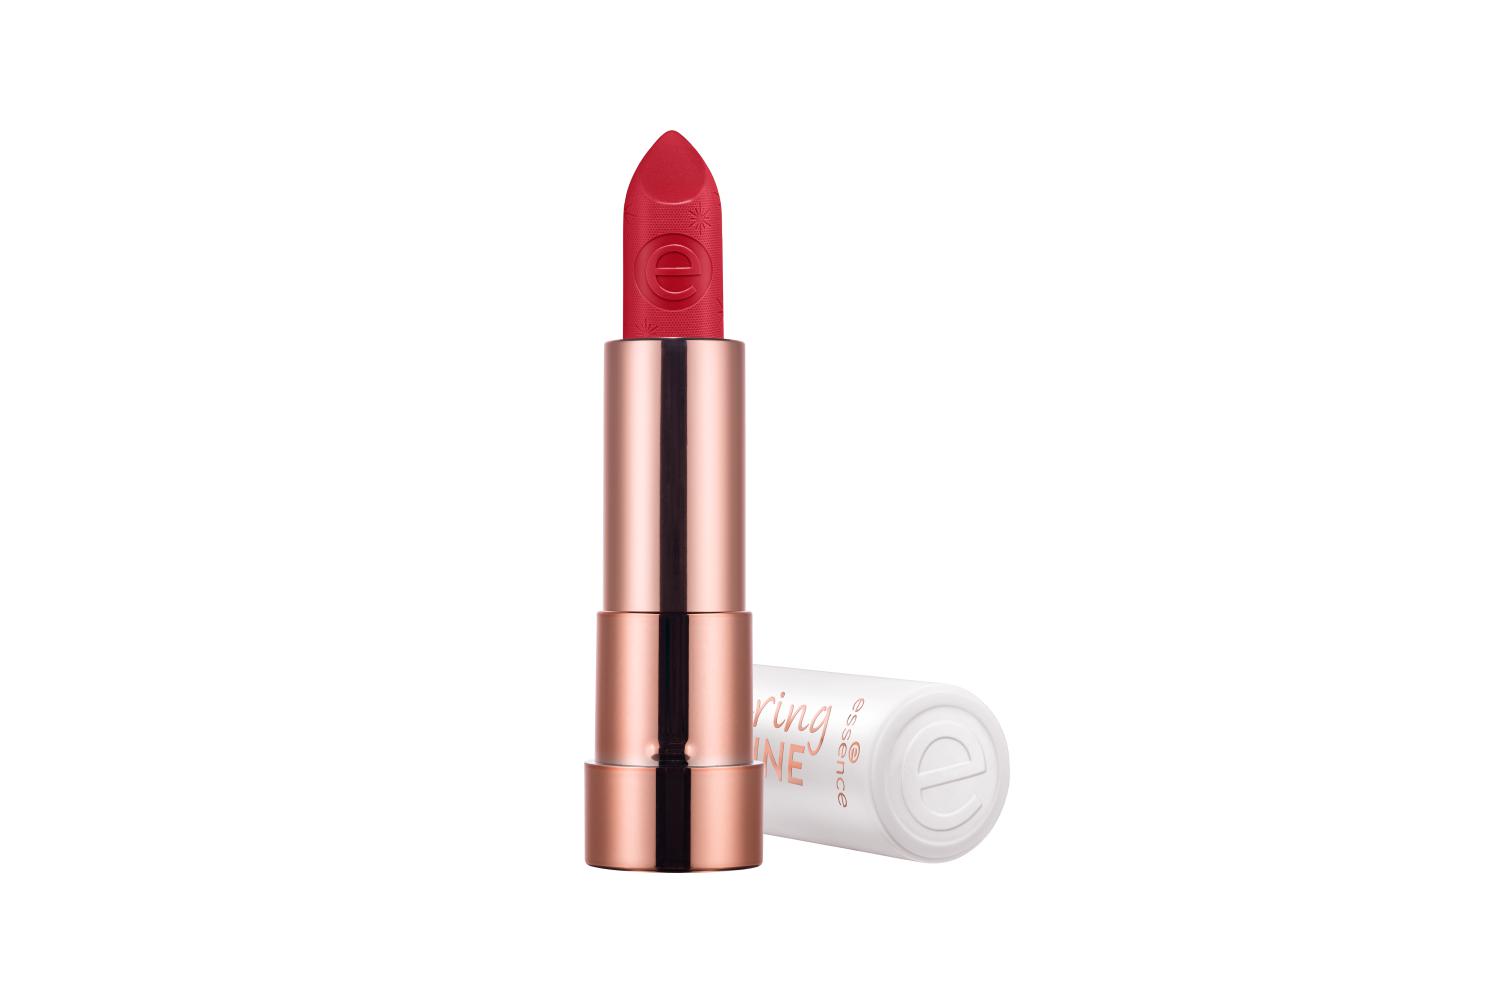 Помада Caring shine vegan collagen lipstick, оттенок My love 205, Essence, 882 руб. (ozon.ru)